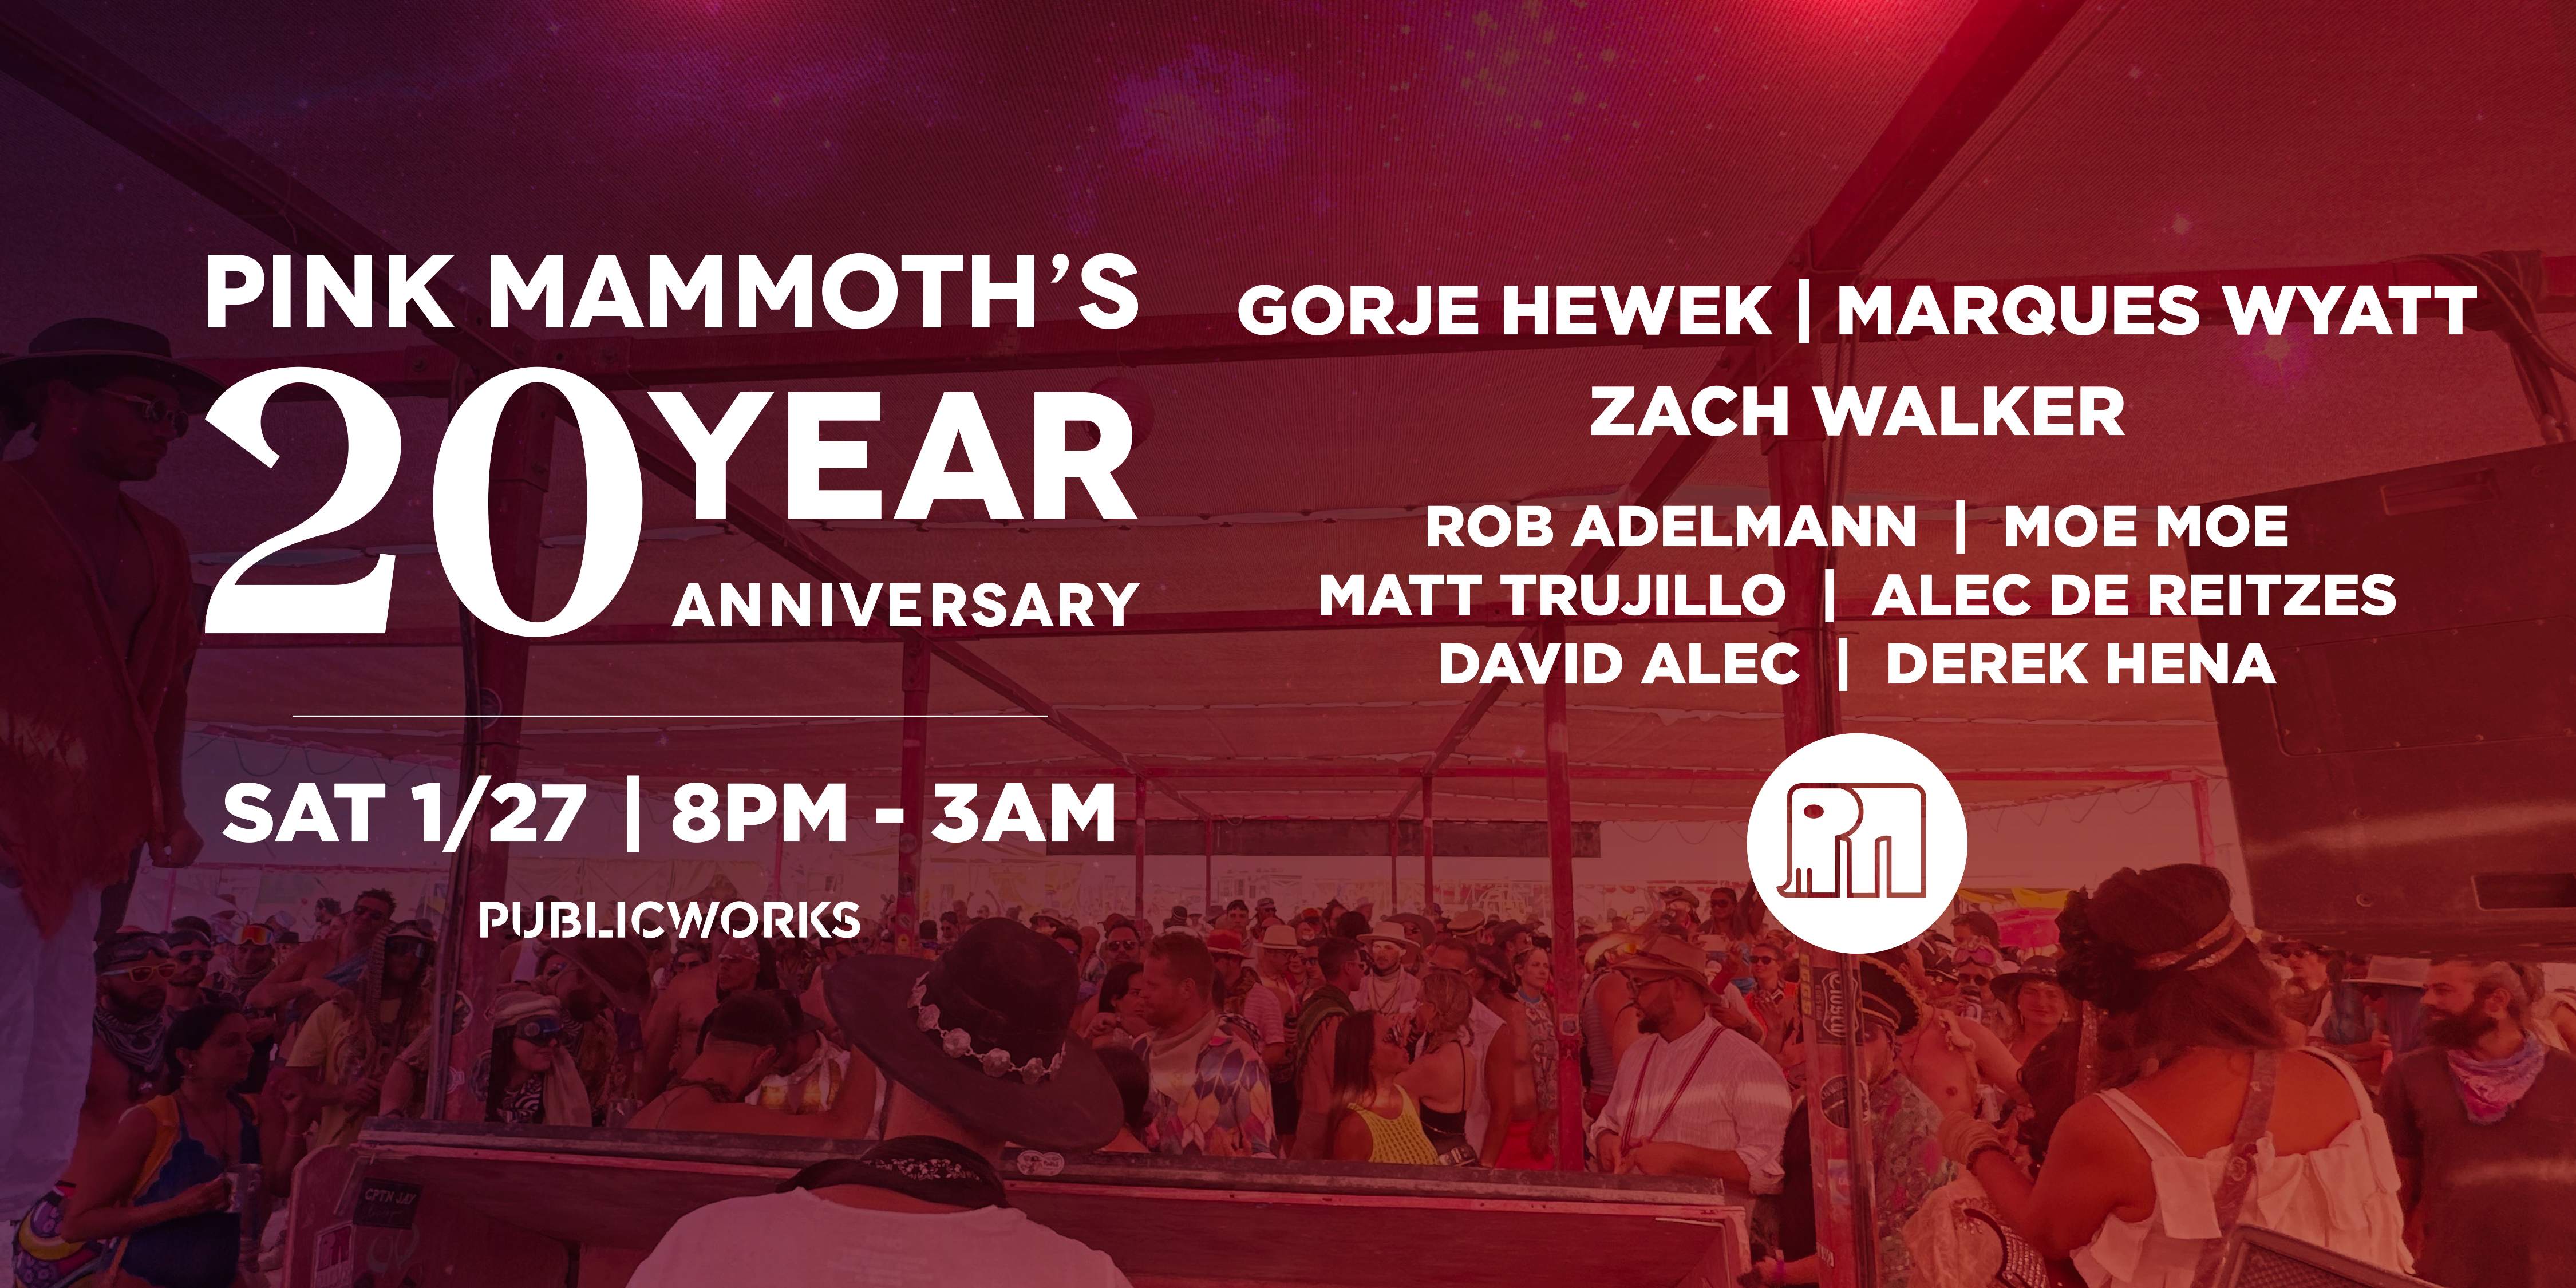 Pink Mammoth: 20 YEAR ANNIVERSARY with Marques Wyatt, Gorje Hewek, Zach Walker + more - フライヤー表